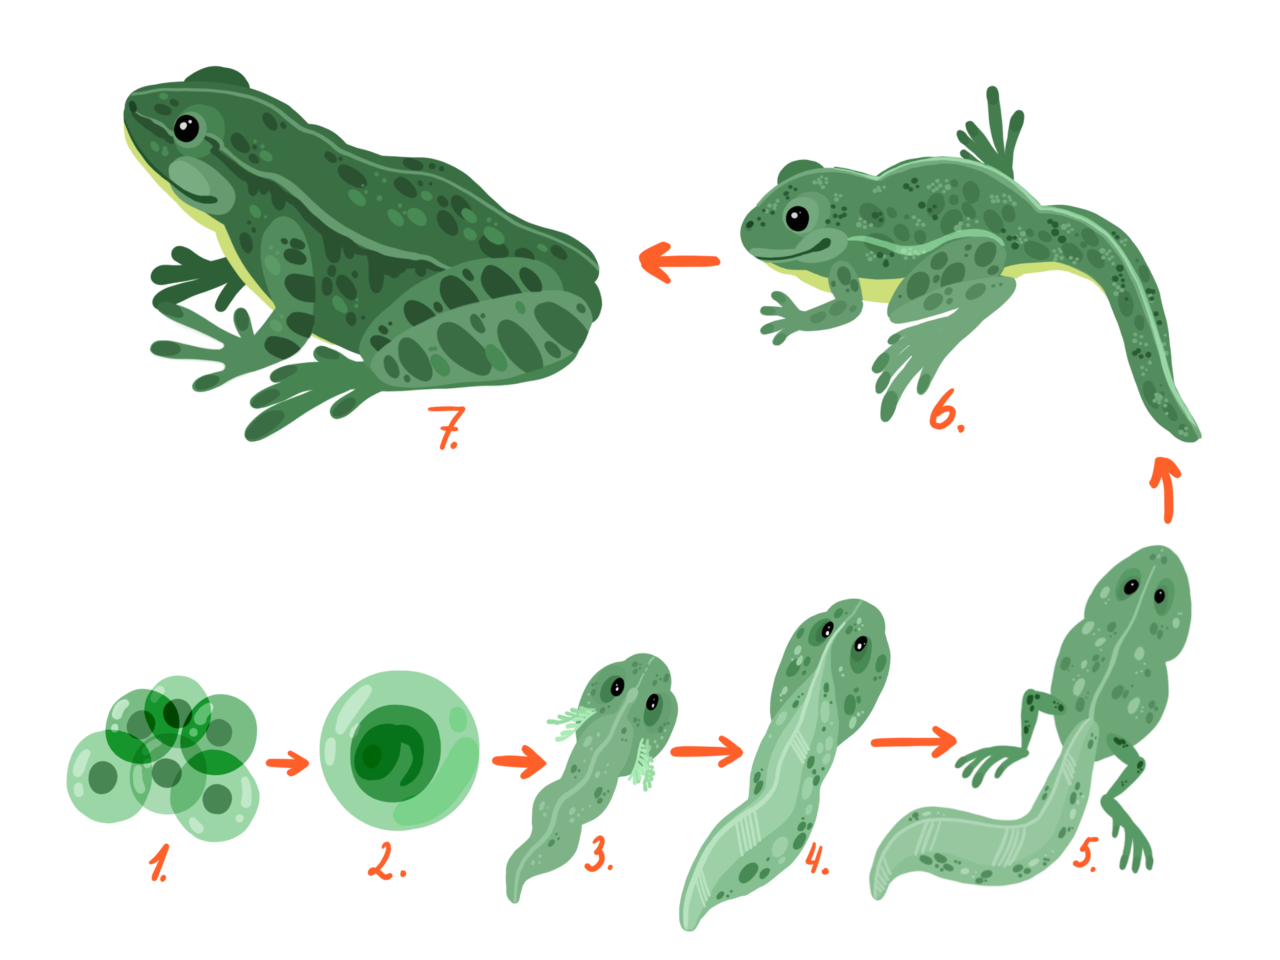 Развитие головастика земноводных. Метаморфозы головастика лягушки. Стадии развития головастика лягушки. Эволюция головастика в лягушку. Схема стадии развития головастиков лягушек.